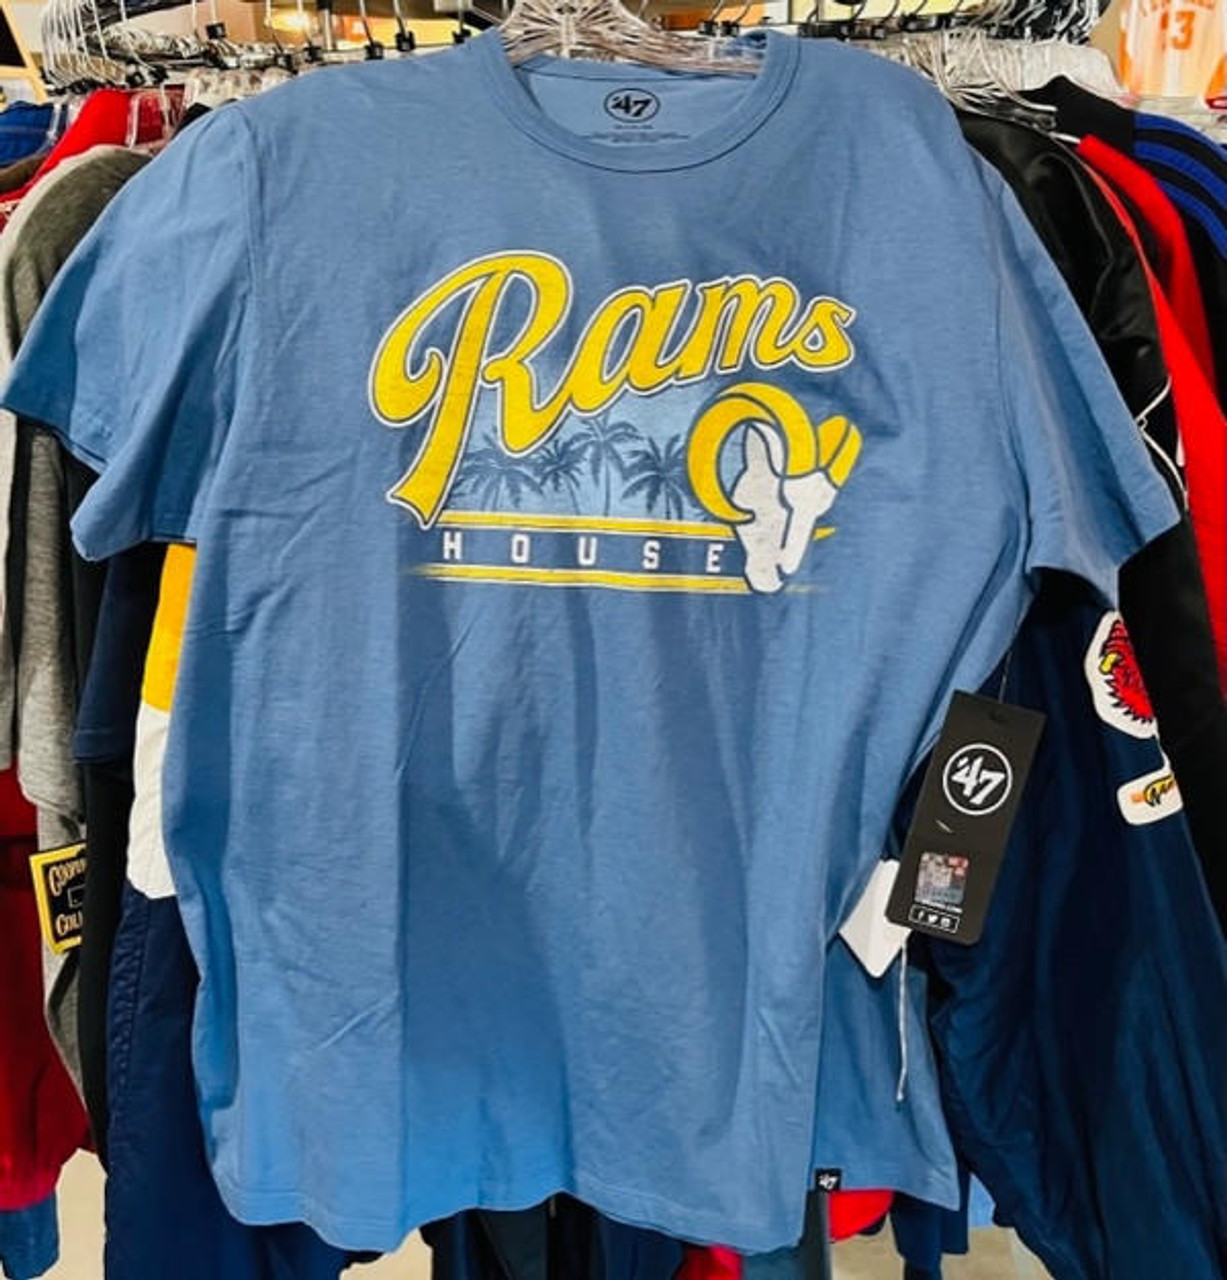 LA Rams NFL Football Los Angeles Unisex Tee Tshirt